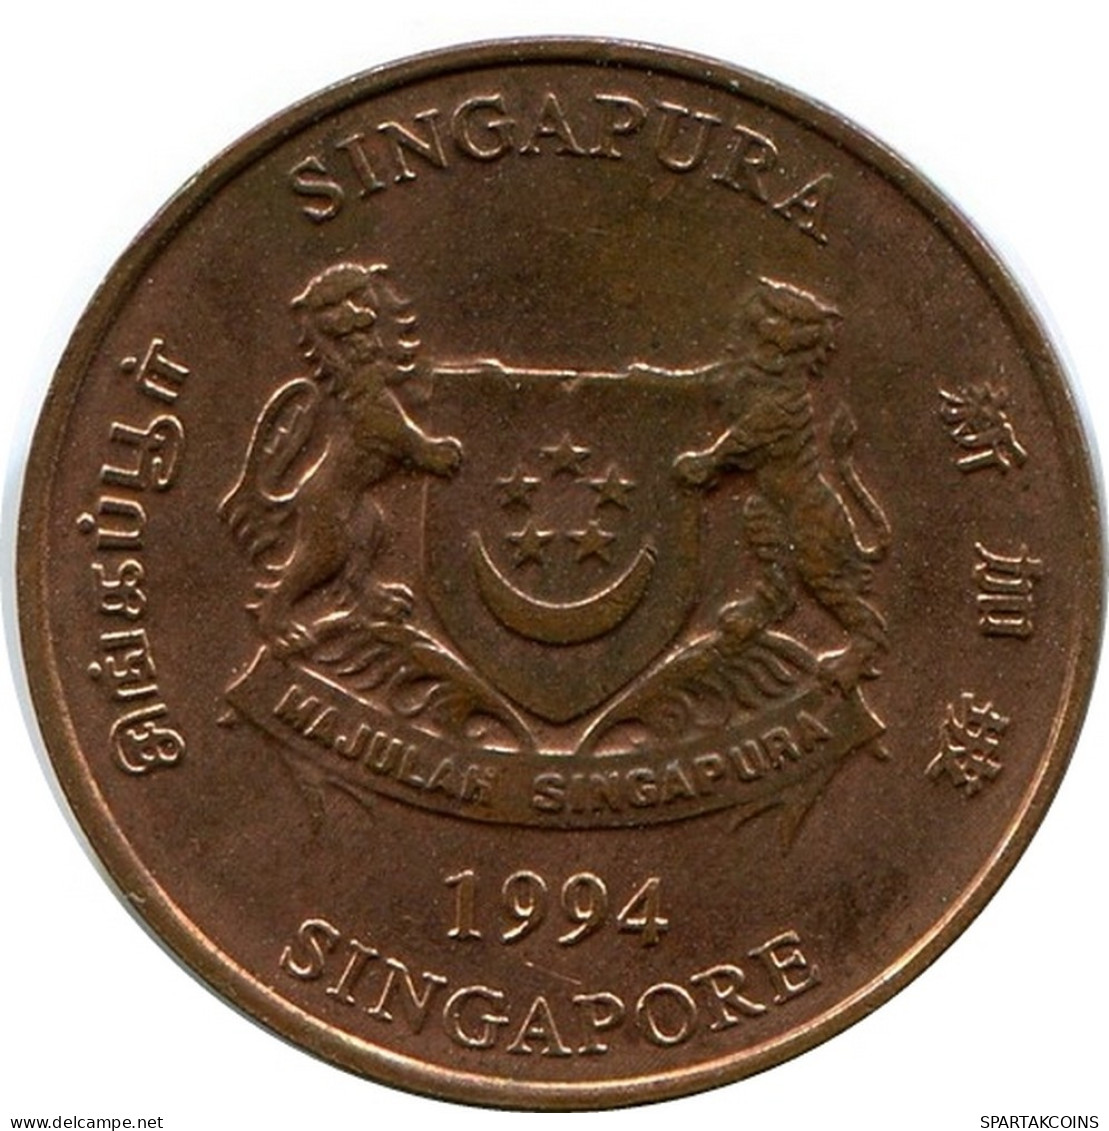 1 CENT 1994 SINGAPORE Coin #AR168.U.A - Singapore